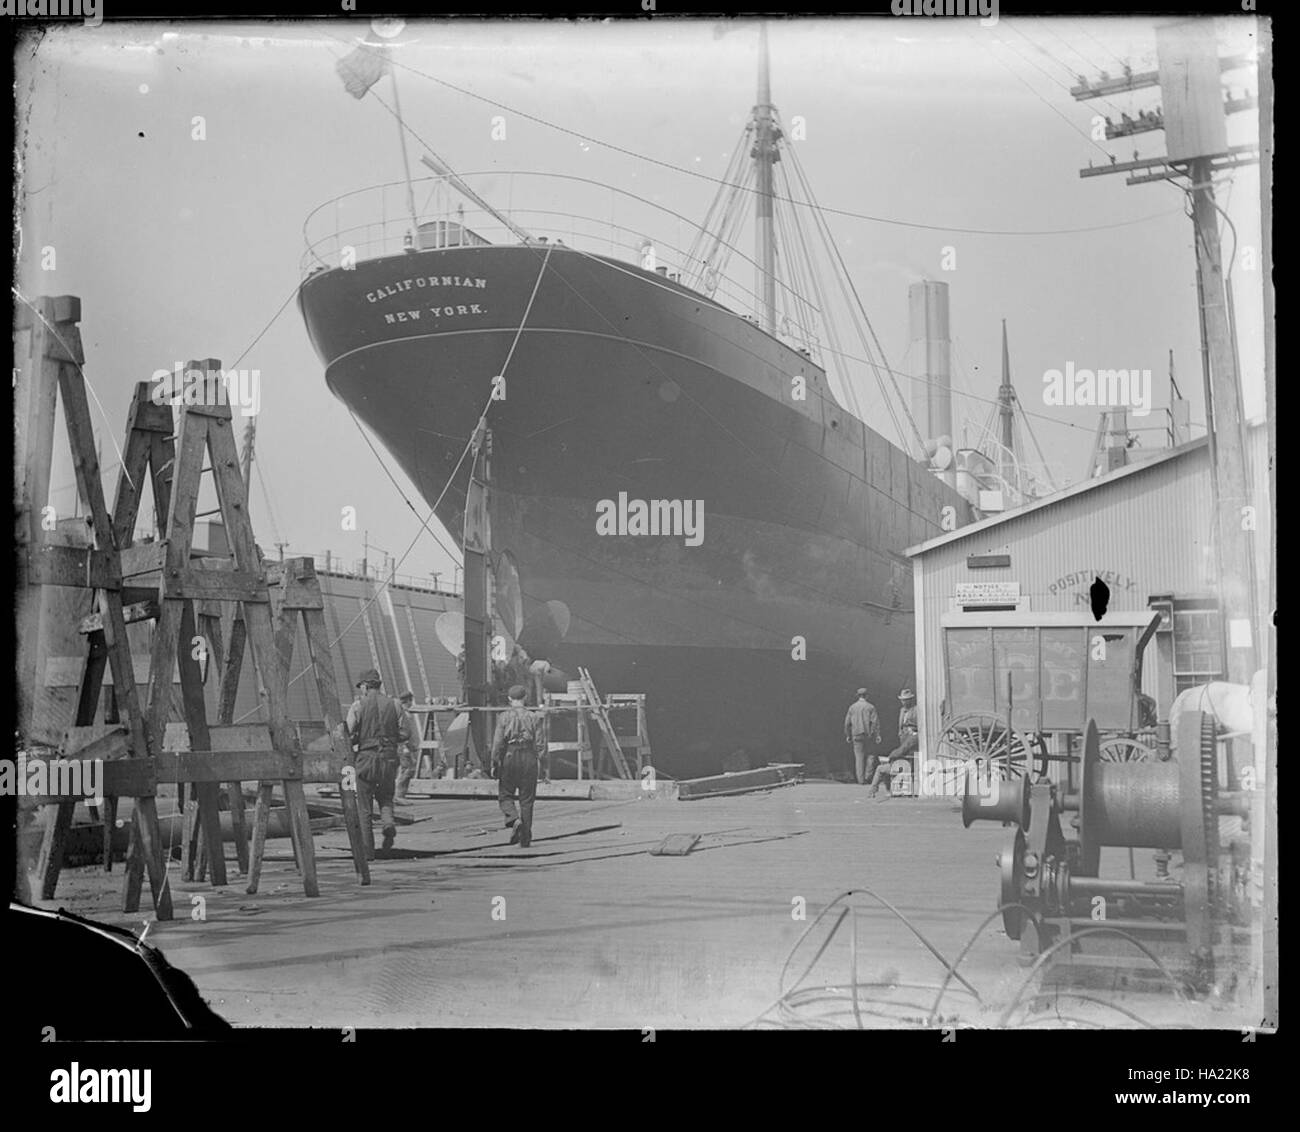 Sfmaritimenps collections 21864921391 californien (construit 1900 ; navire de charge) en cale sèche au niveau de l'Union Iron Works, l'arrière en vue, entre 1900-1918 Banque D'Images